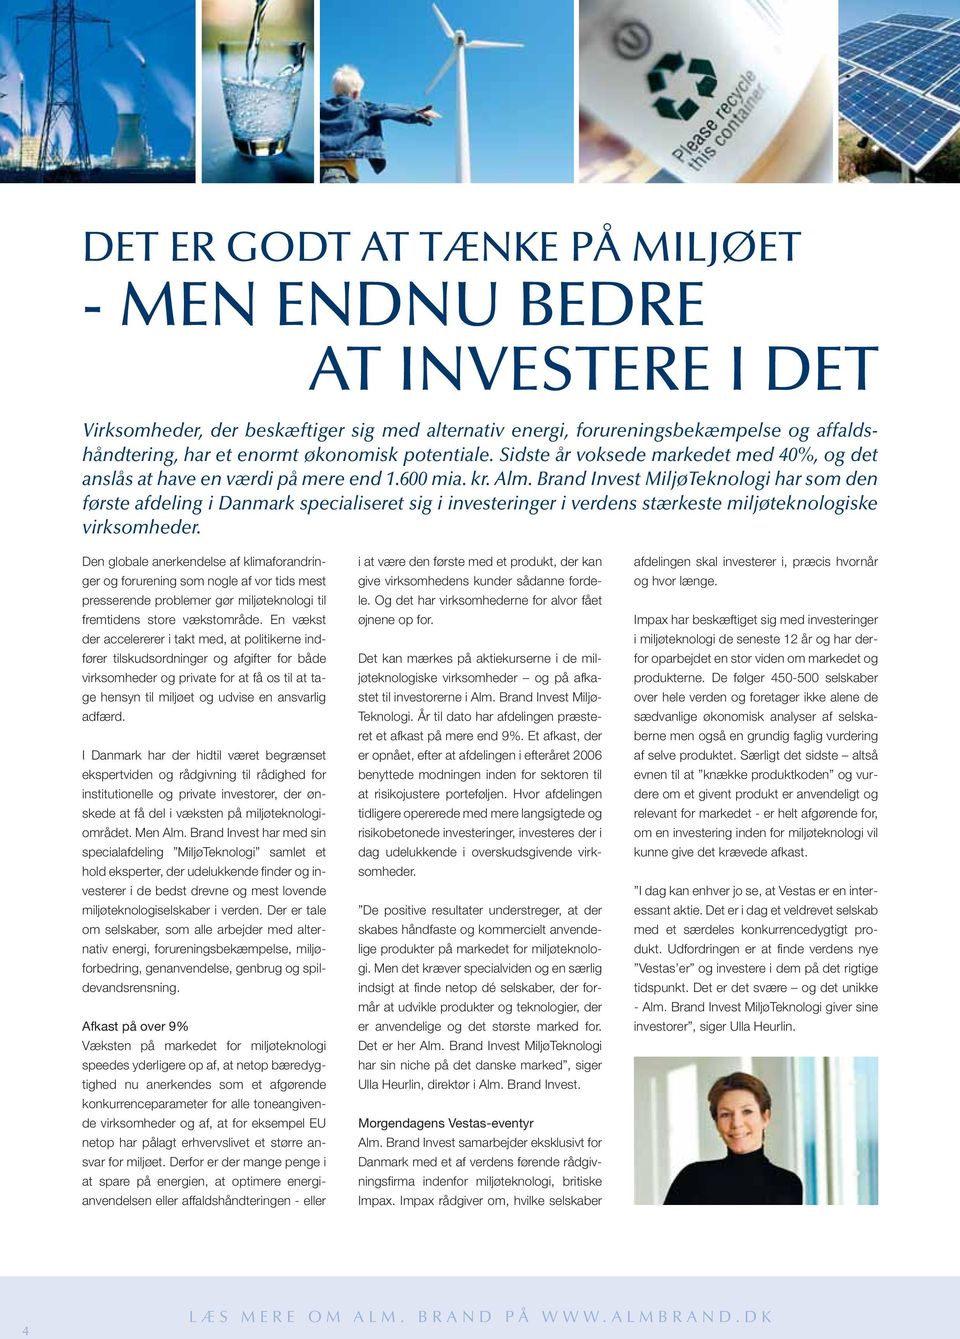 Brand Invest MiljøTeknologi har som den første afdeling i Danmark specialiseret sig i investeringer i verdens stærkeste miljøteknologiske virksomheder.